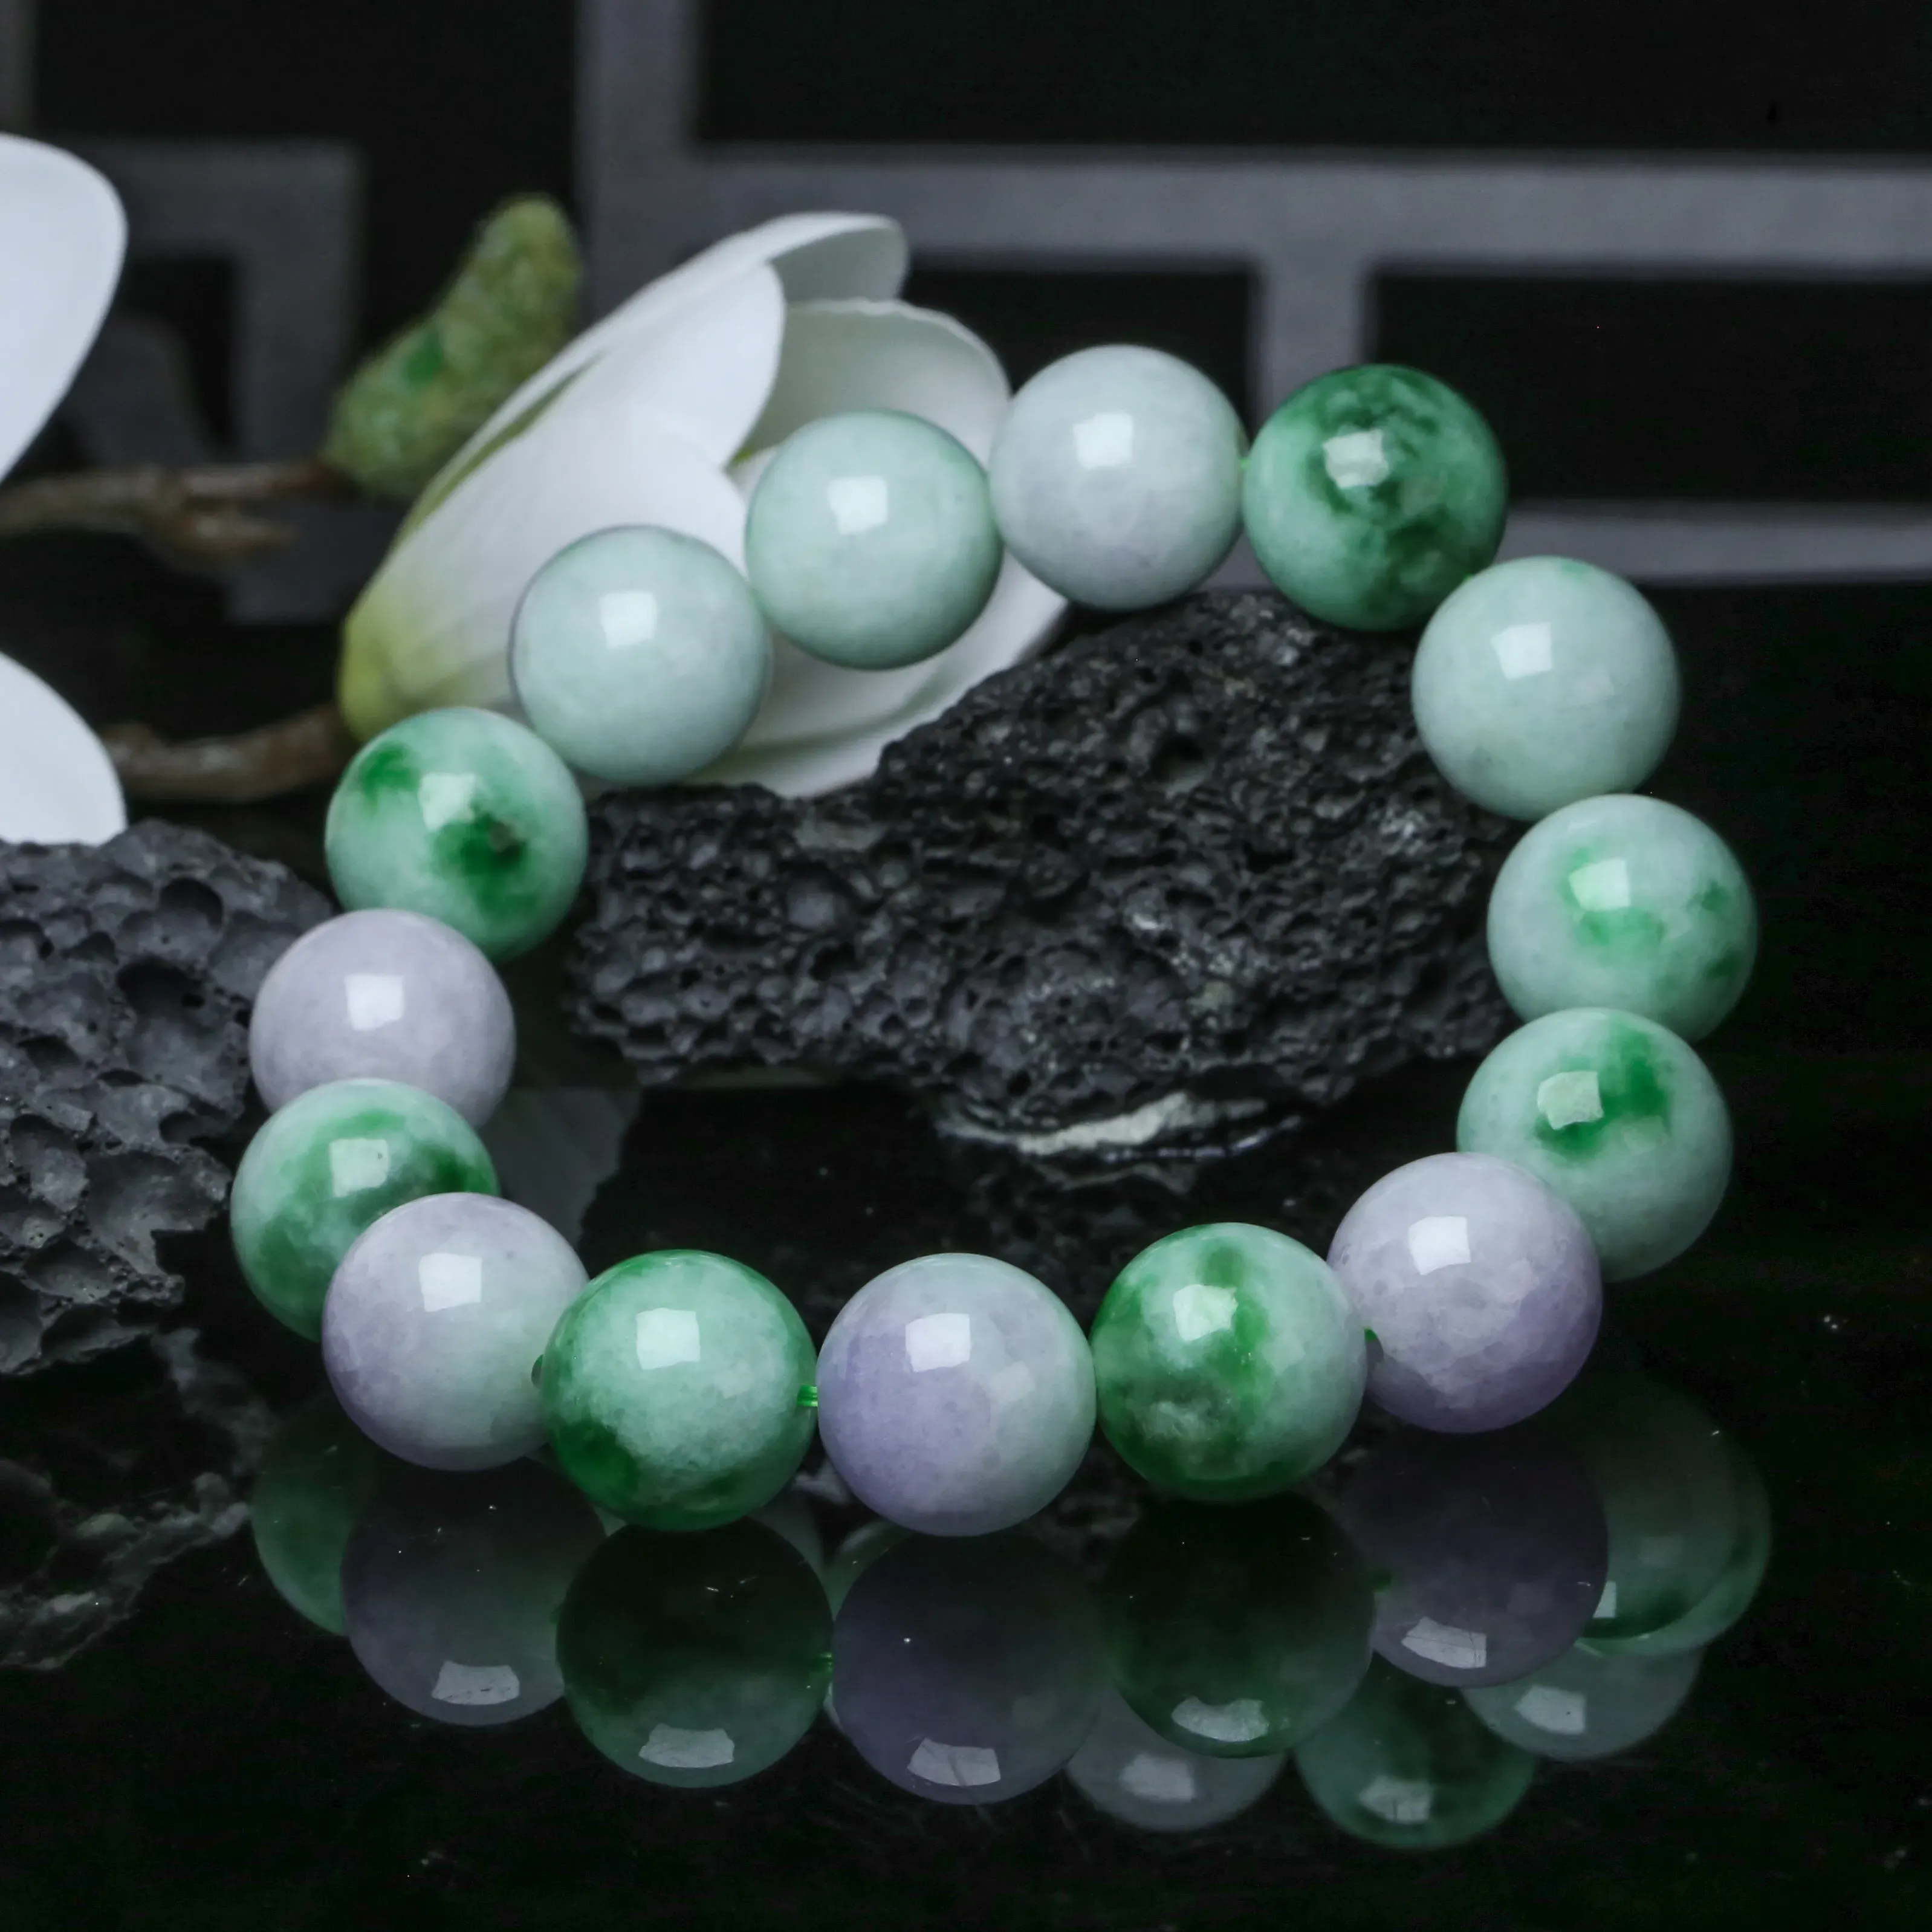 春彩翡翠圆珠手串，共14颗珠子，取其中一颗珠尺寸大约14.1mm，玉质莹润，饱满圆润，上手佩戴优雅大方。